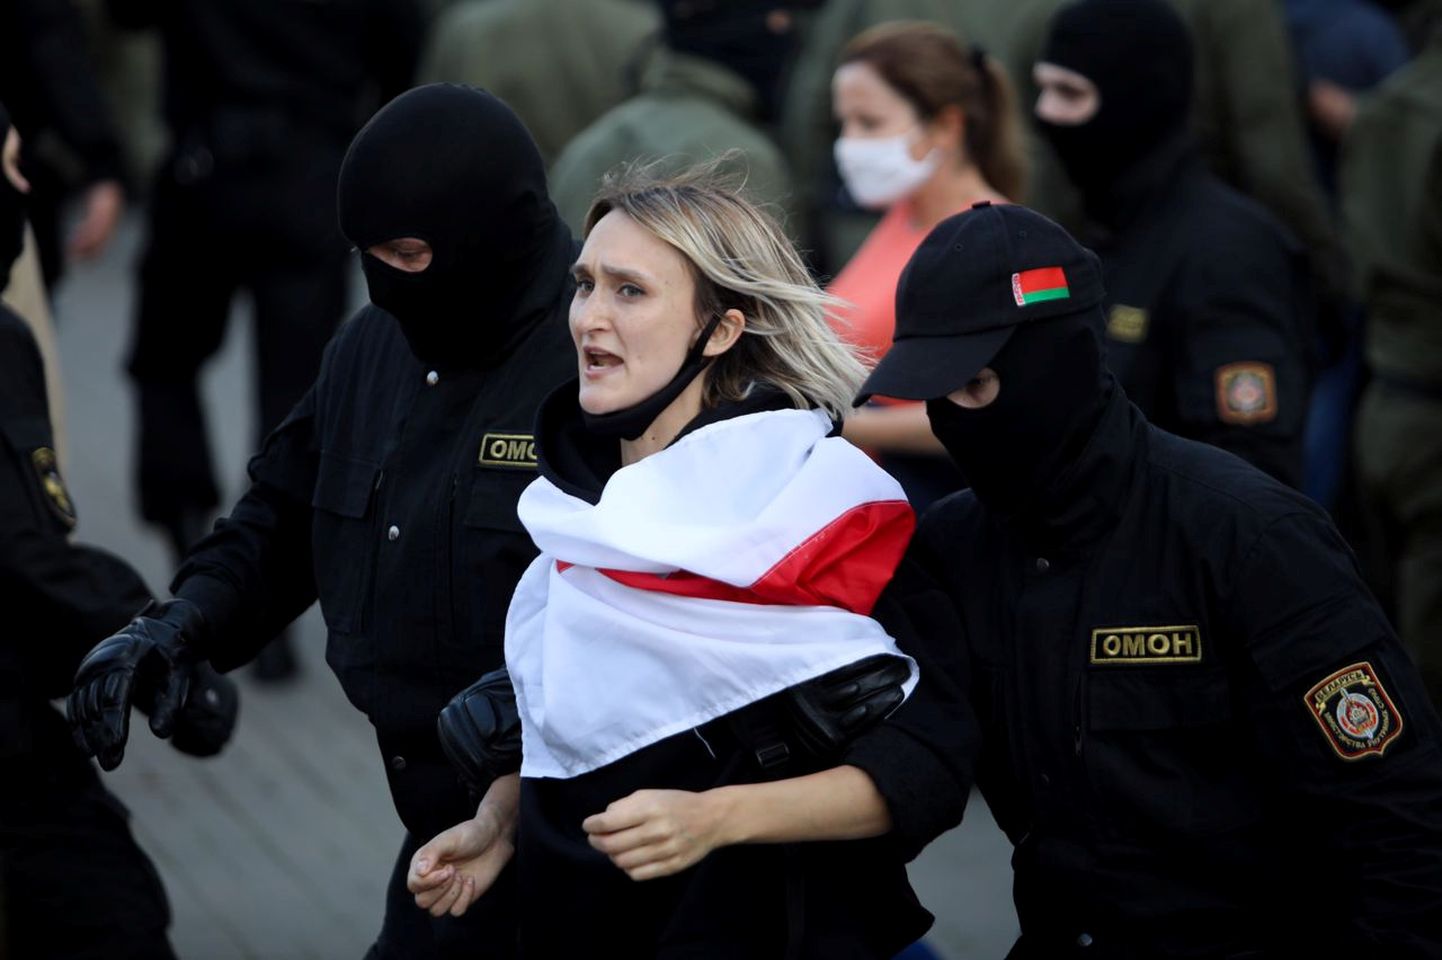 Задержание участницы акции протеста в Минске